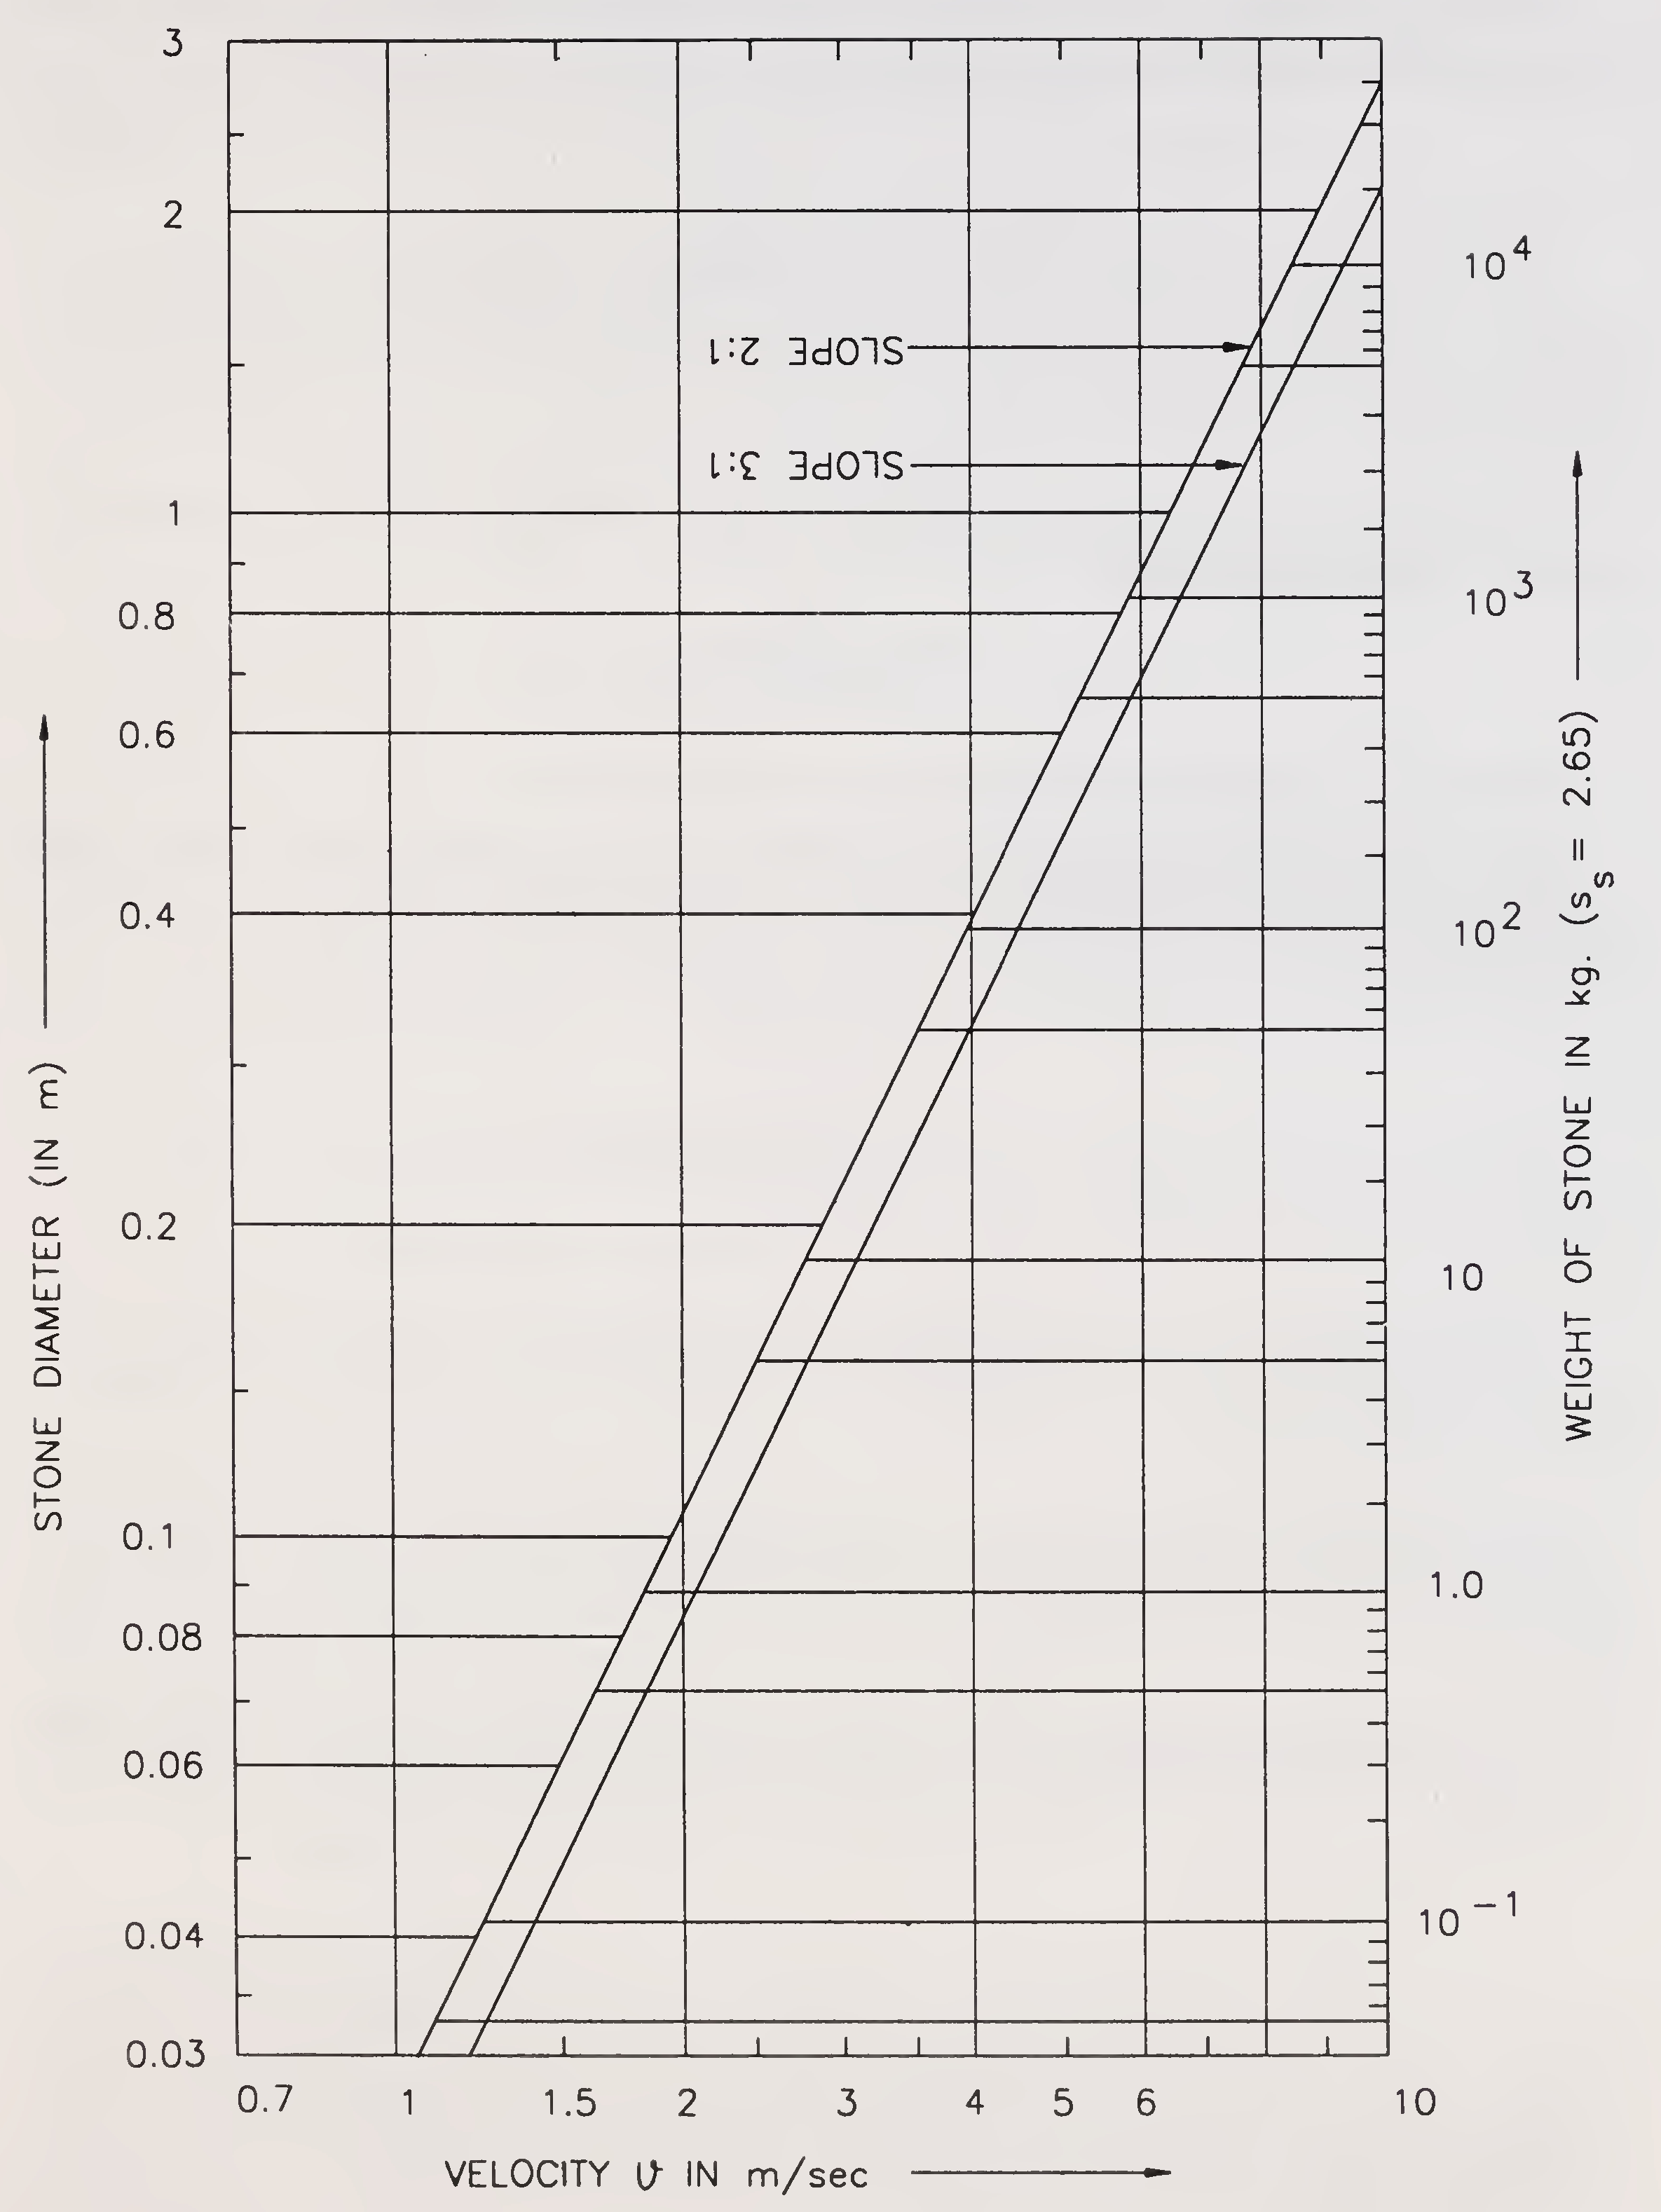 படம் 5.6. கல் சுருதி v / s வேகம் அளவு (பாரா 5.3.5.1)